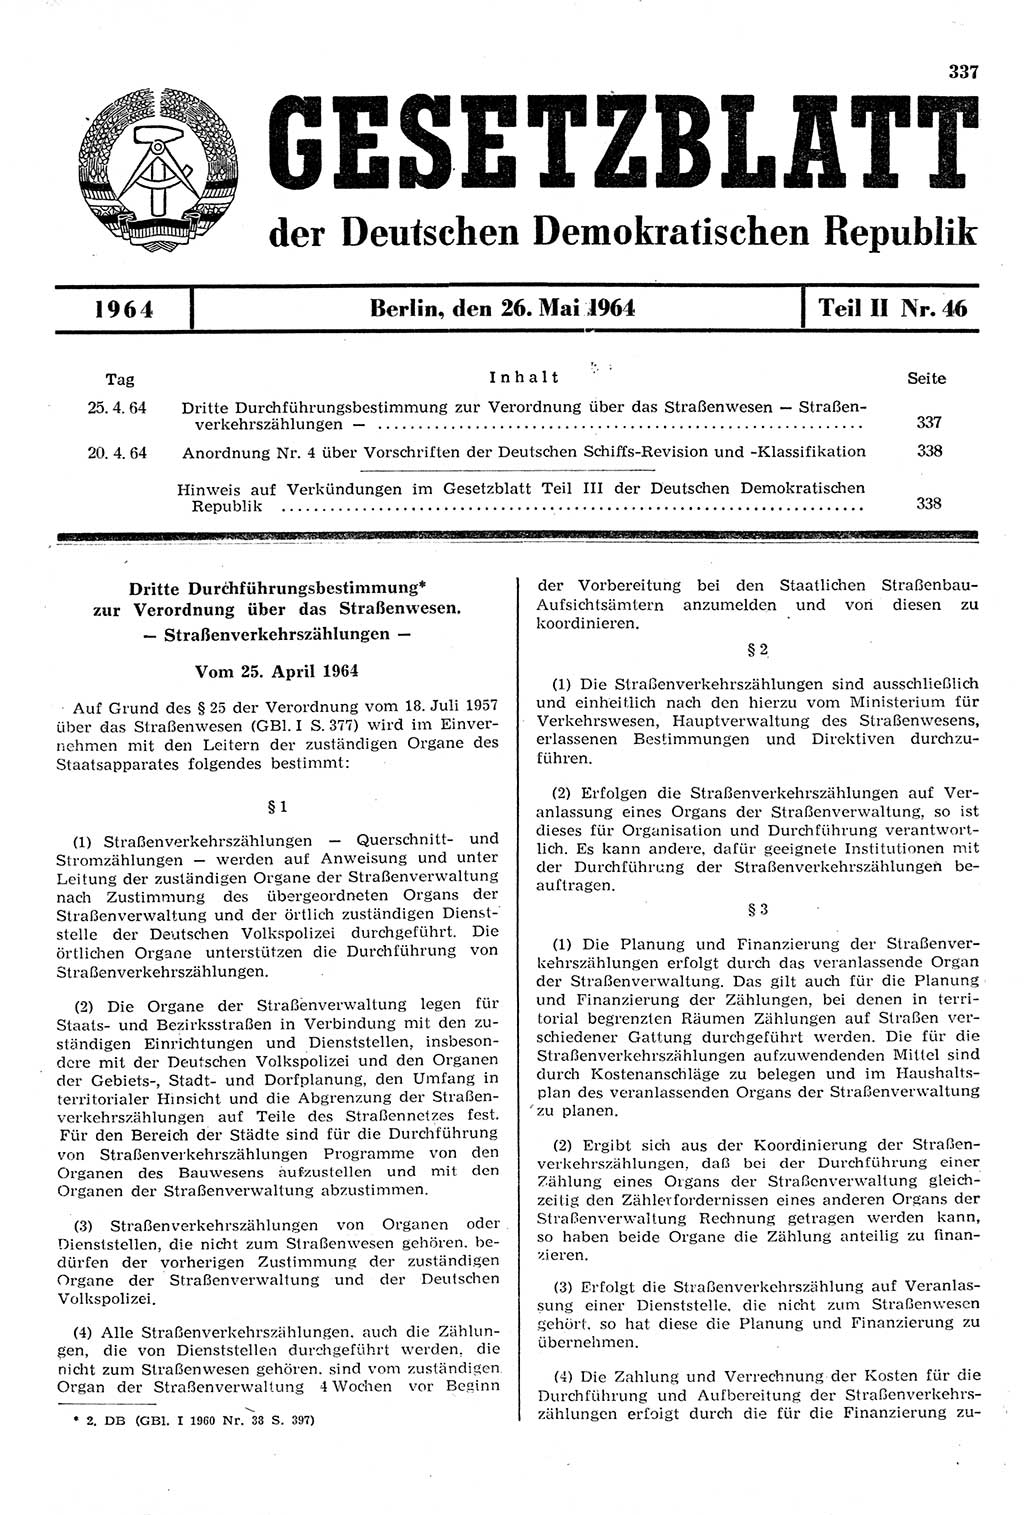 Gesetzblatt (GBl.) der Deutschen Demokratischen Republik (DDR) Teil ⅠⅠ 1964, Seite 337 (GBl. DDR ⅠⅠ 1964, S. 337)